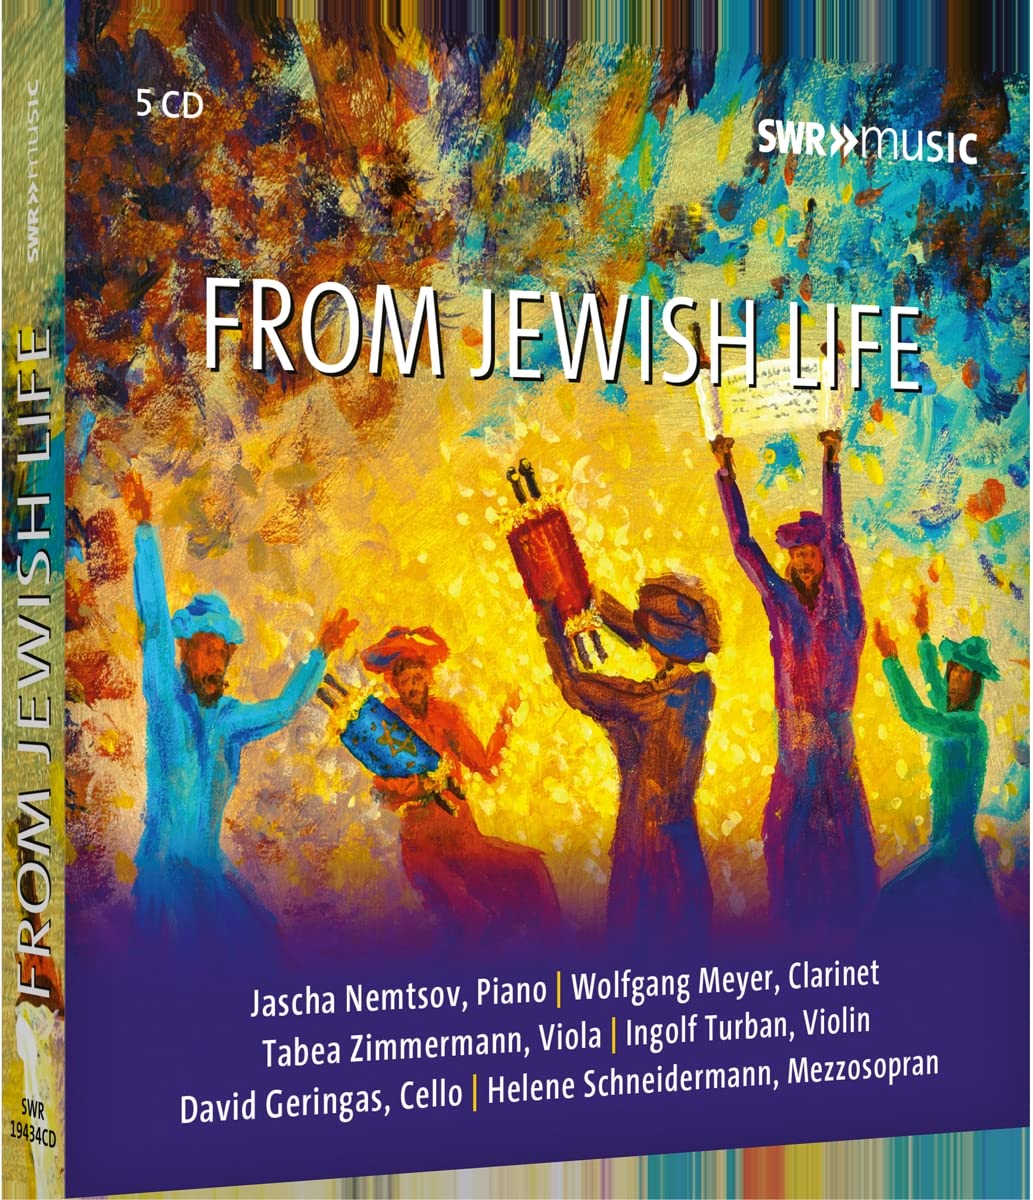 CD-Rezension: From Jewish Life SWR Music  klassik-begeistert.de 15. Mai 2023